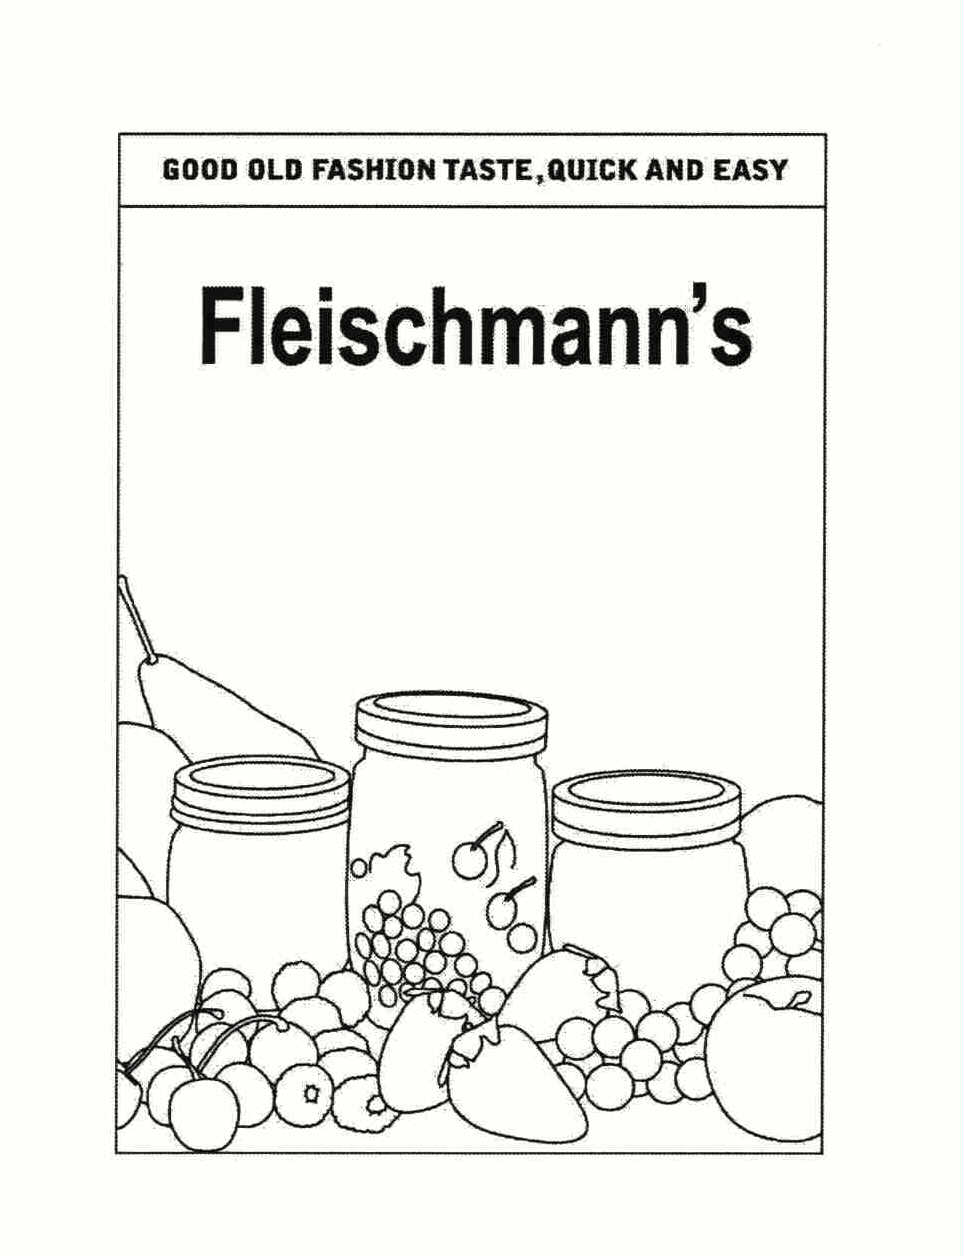  FLEISCHMANN'S GOOD OLD FASHION TASTE, QUICK AND EASY